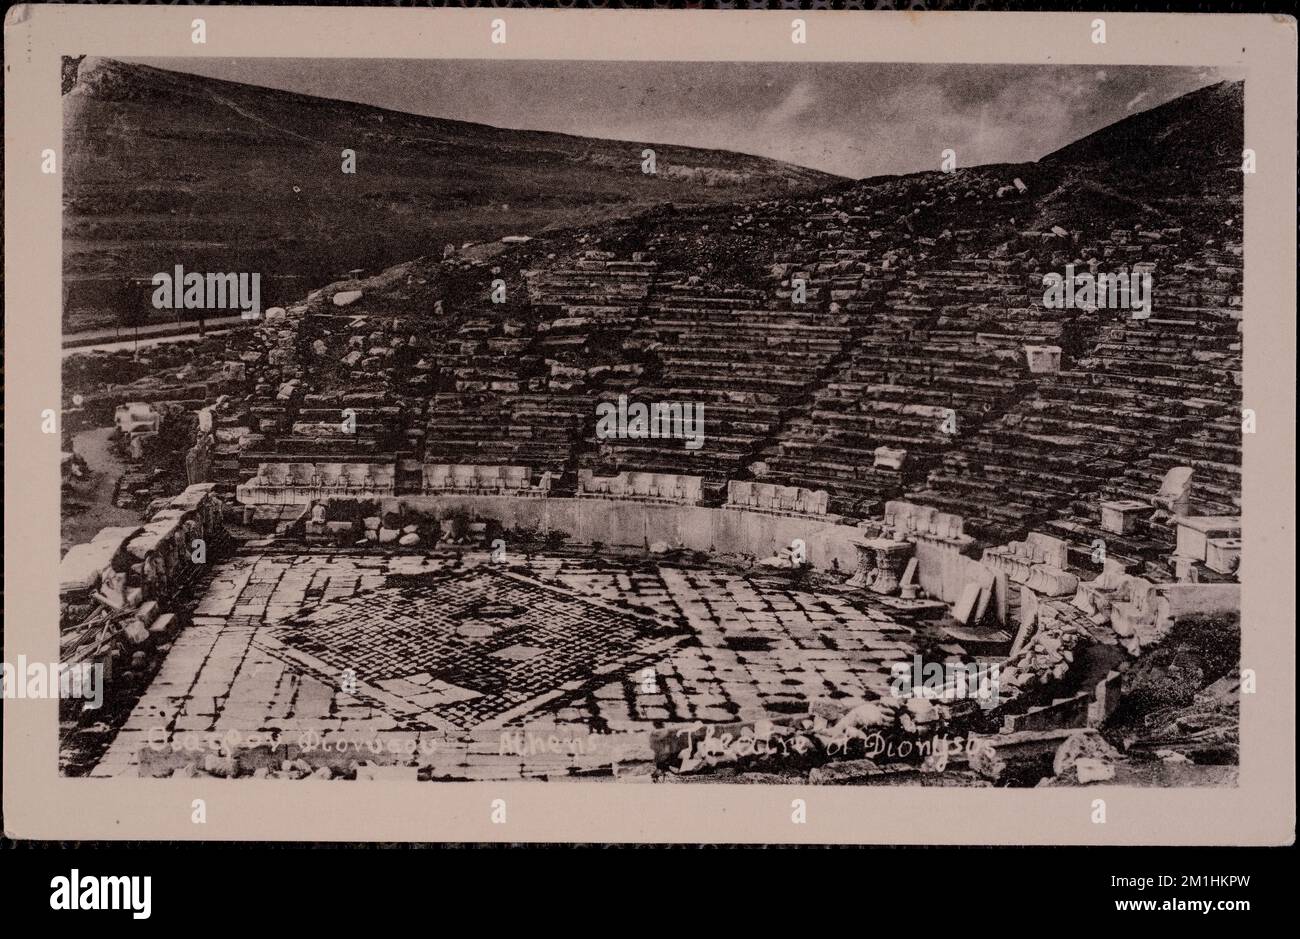 Θεατρον Διονύσου - Teatro di Dionisi , siti archeologici, Anfiteatro. Collezione Nicholas Catsimpoolas Foto Stock